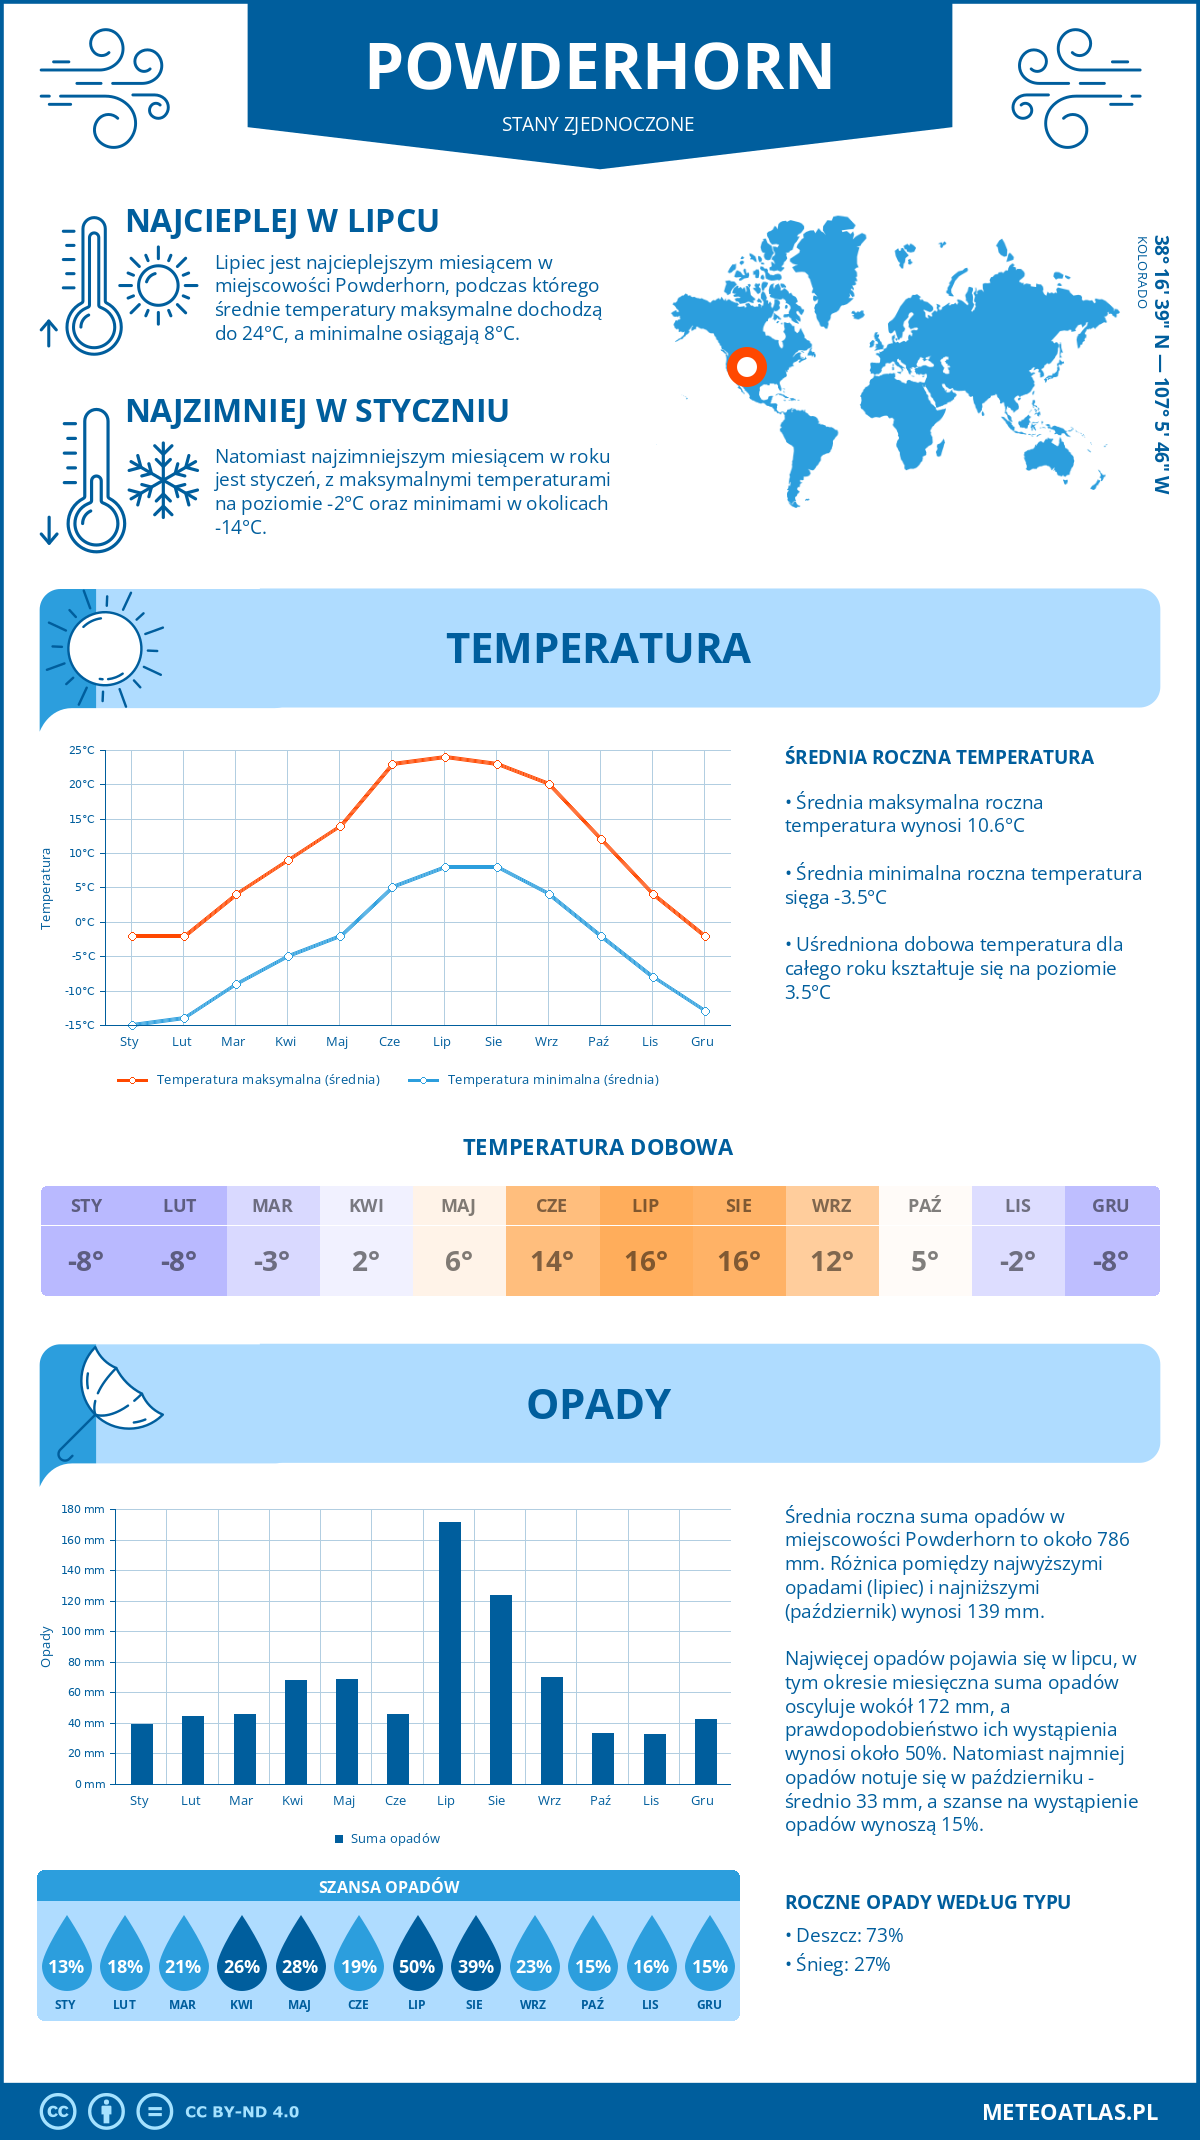 Pogoda Powderhorn (Stany Zjednoczone). Temperatura oraz opady.